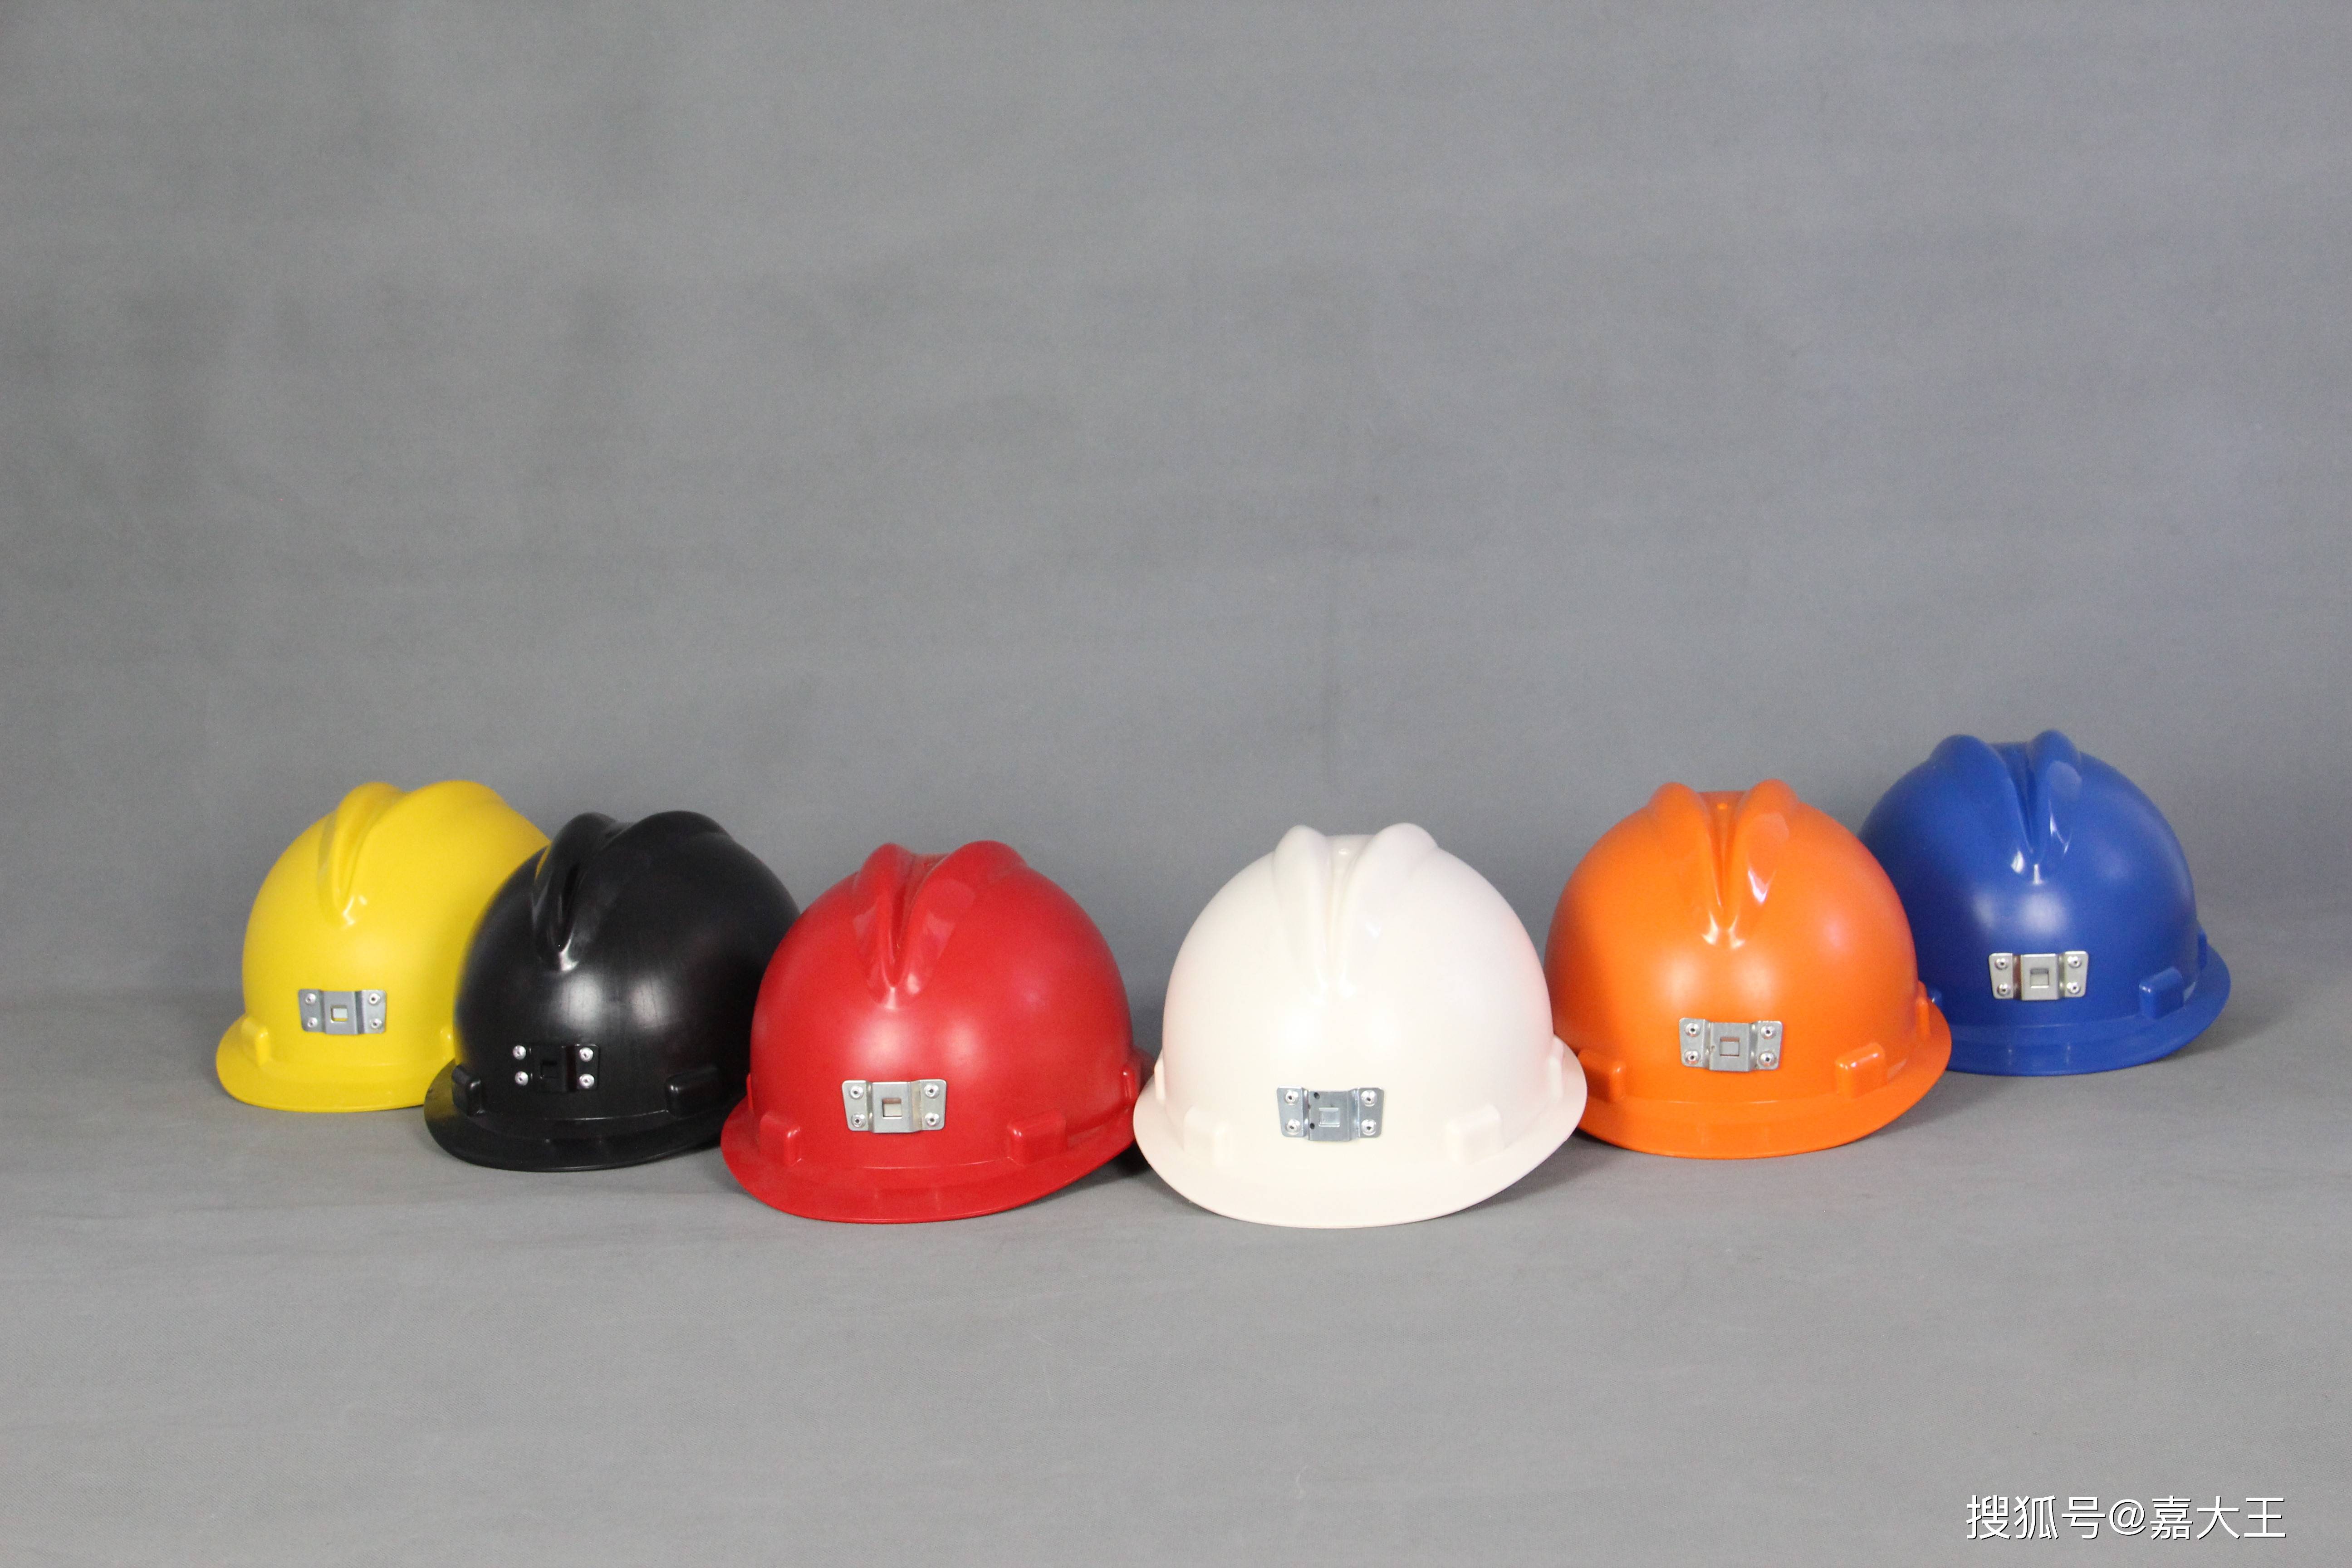 飞鹤工业购 | 劳保用品中安全帽颜色的含义,有哪些作用?